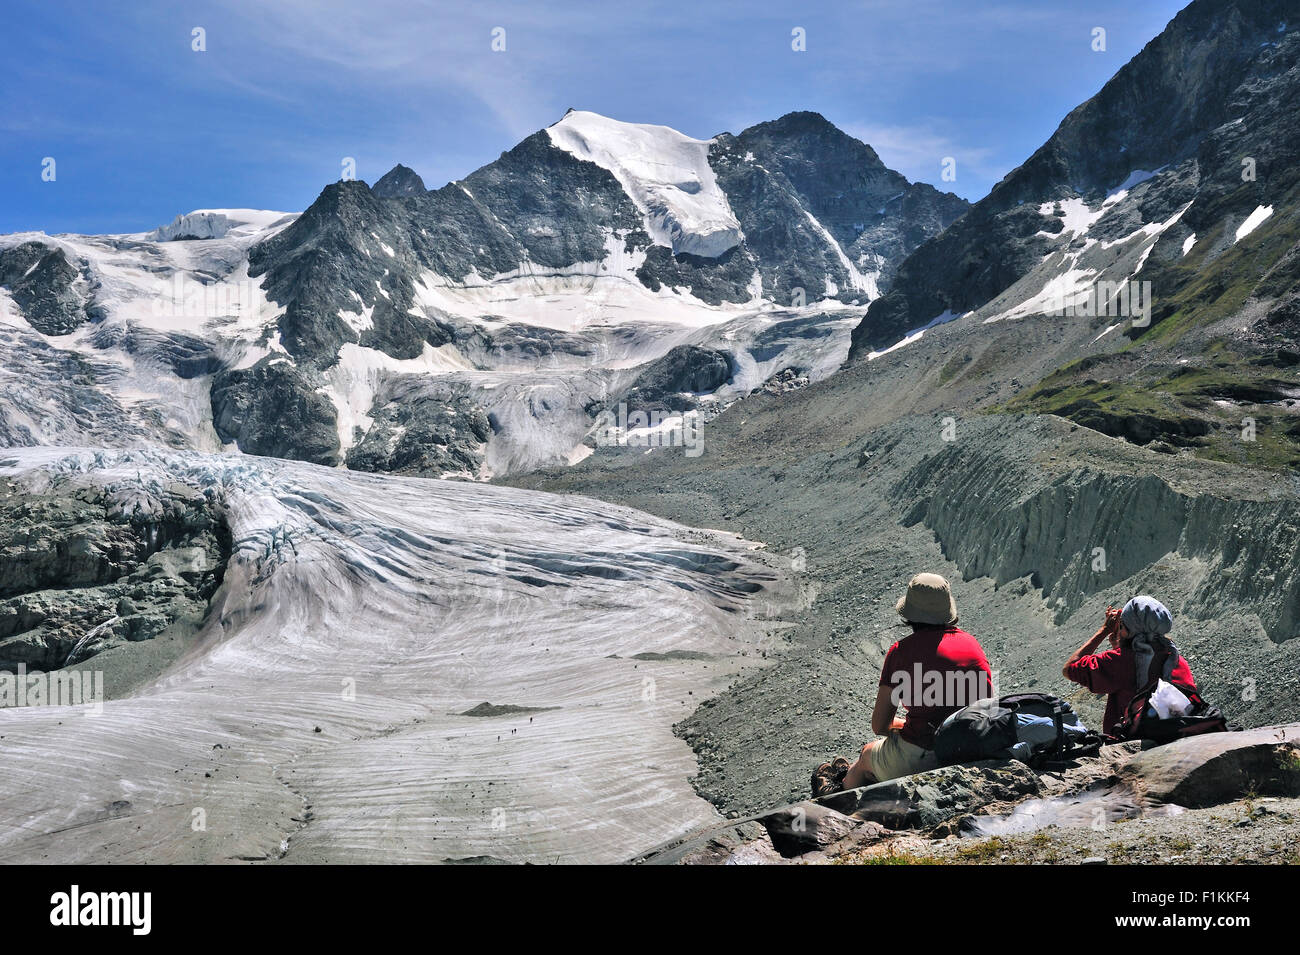 Les randonneurs de montagne / les randonneurs se reposant avec vue sur le glacier de Moiry dans les Alpes Pennines, Valais / Wallis (Suisse) Banque D'Images